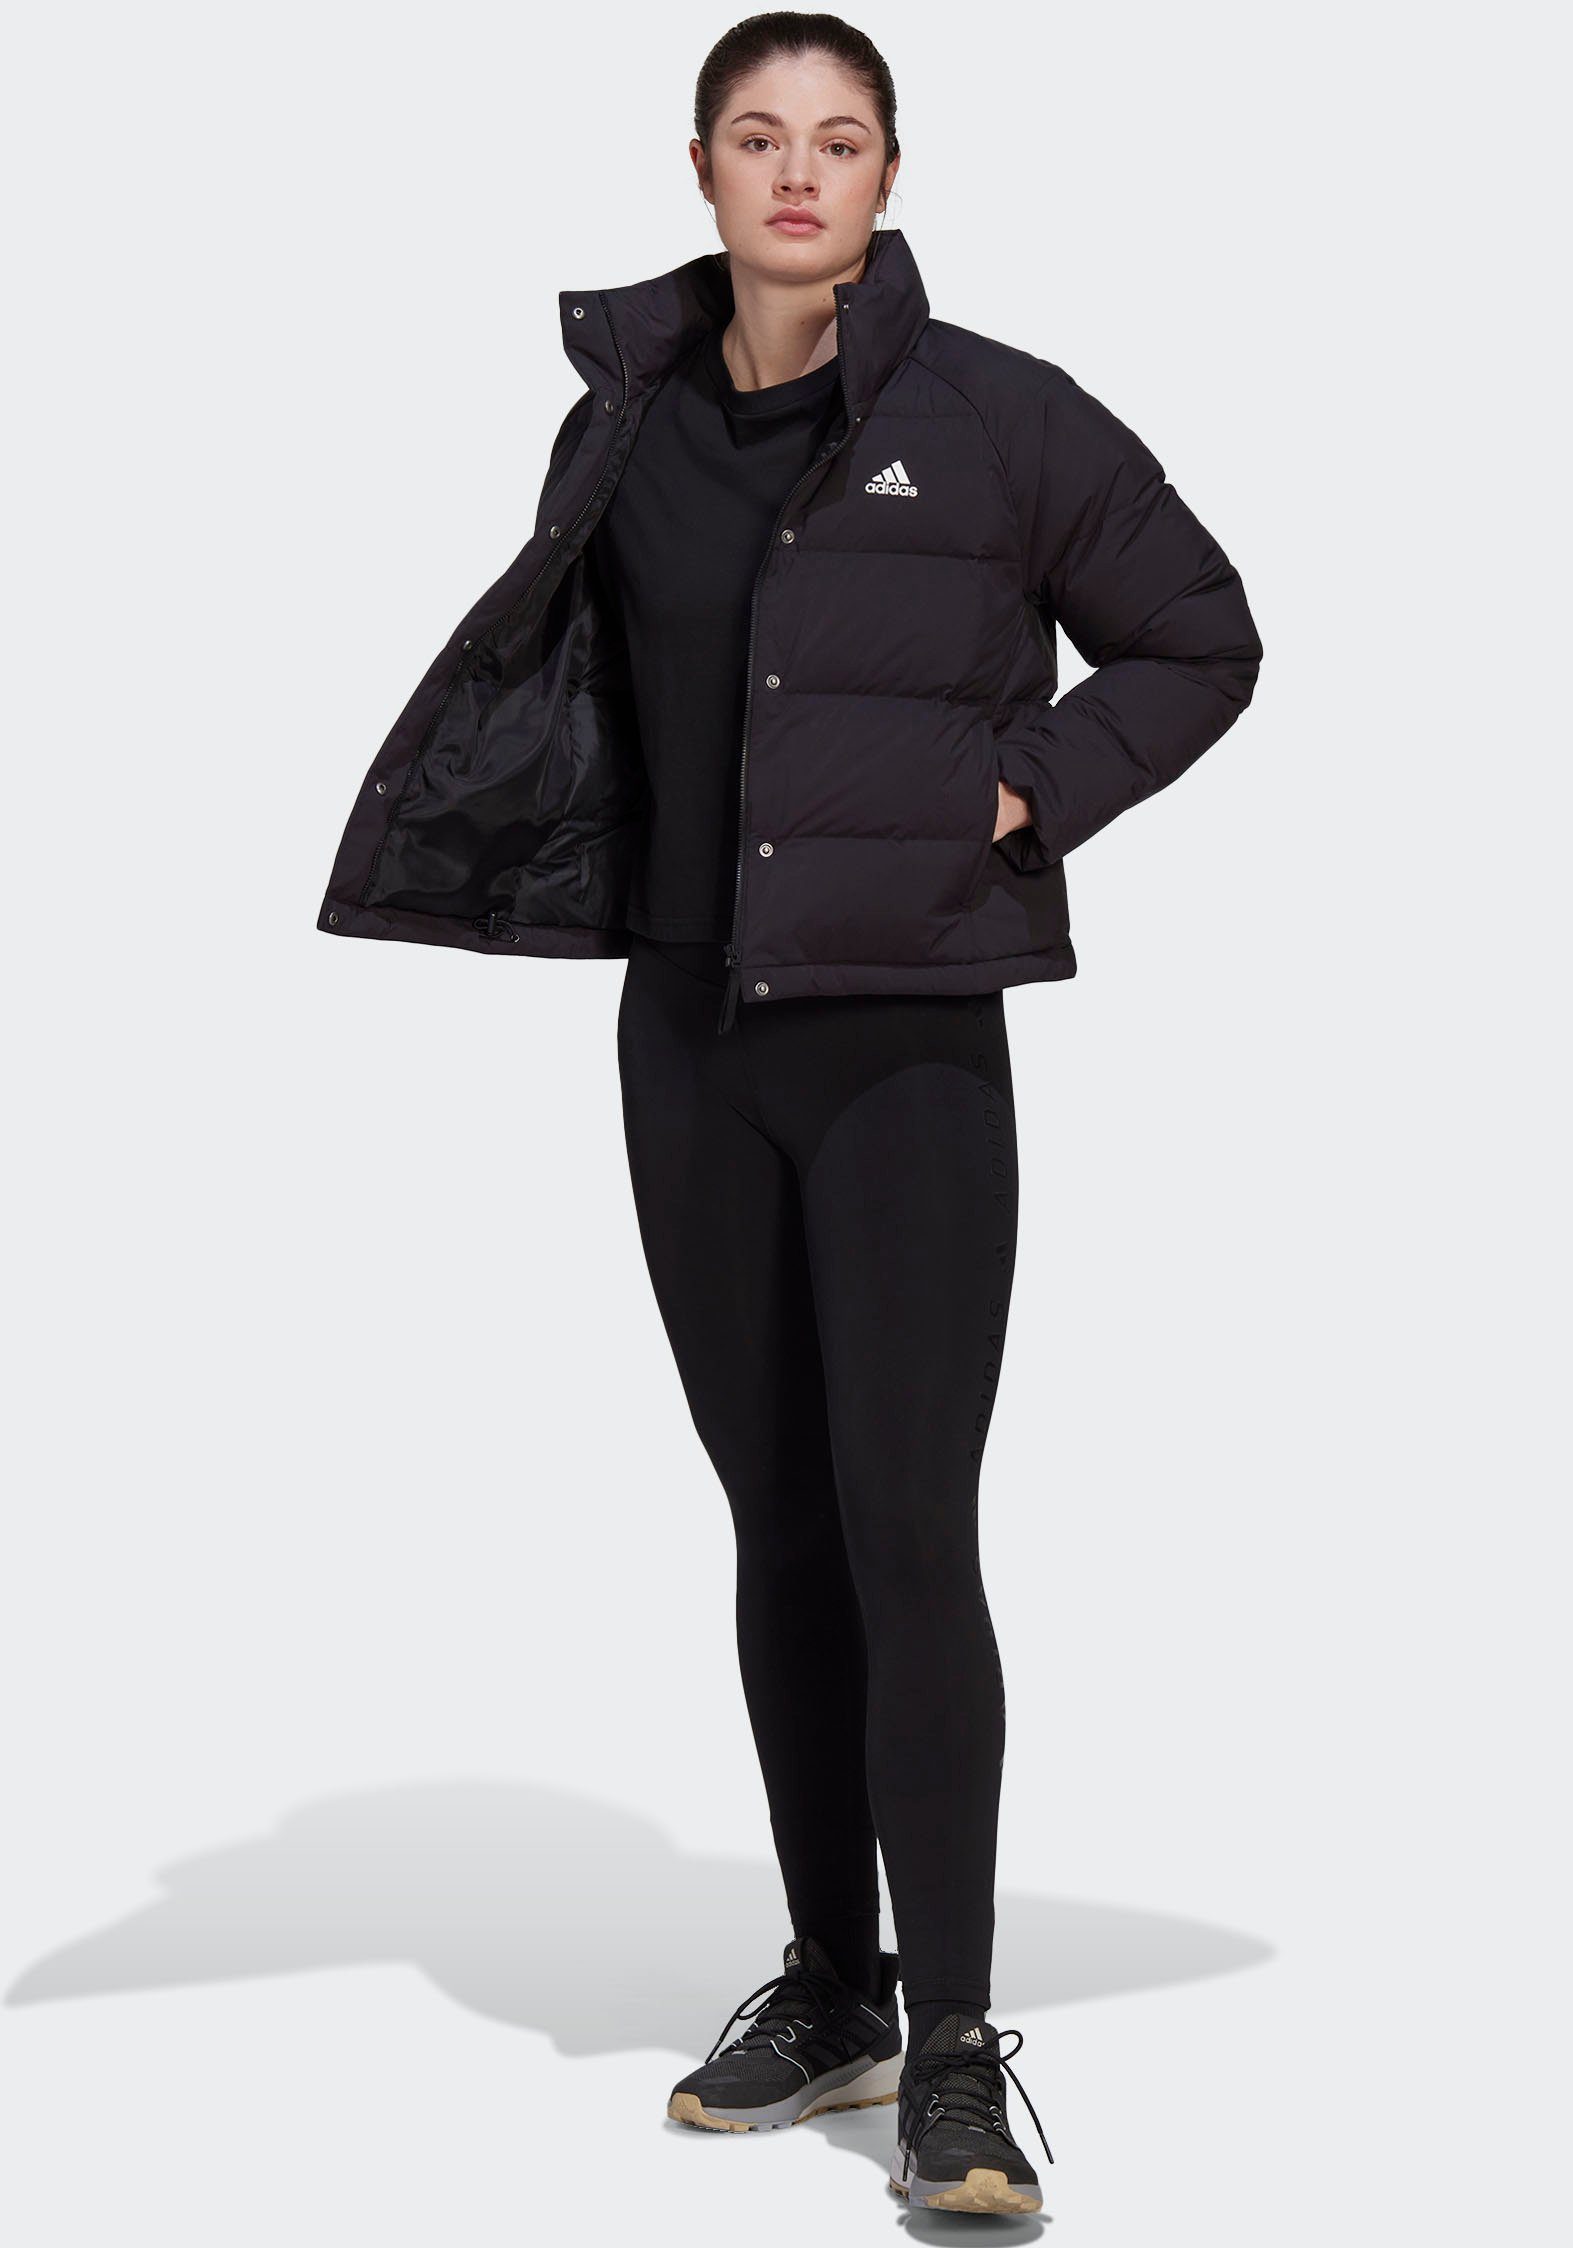 HELIONIC Outdoorjacke Sportswear DAUNENJACKE adidas RELAXED schwarz